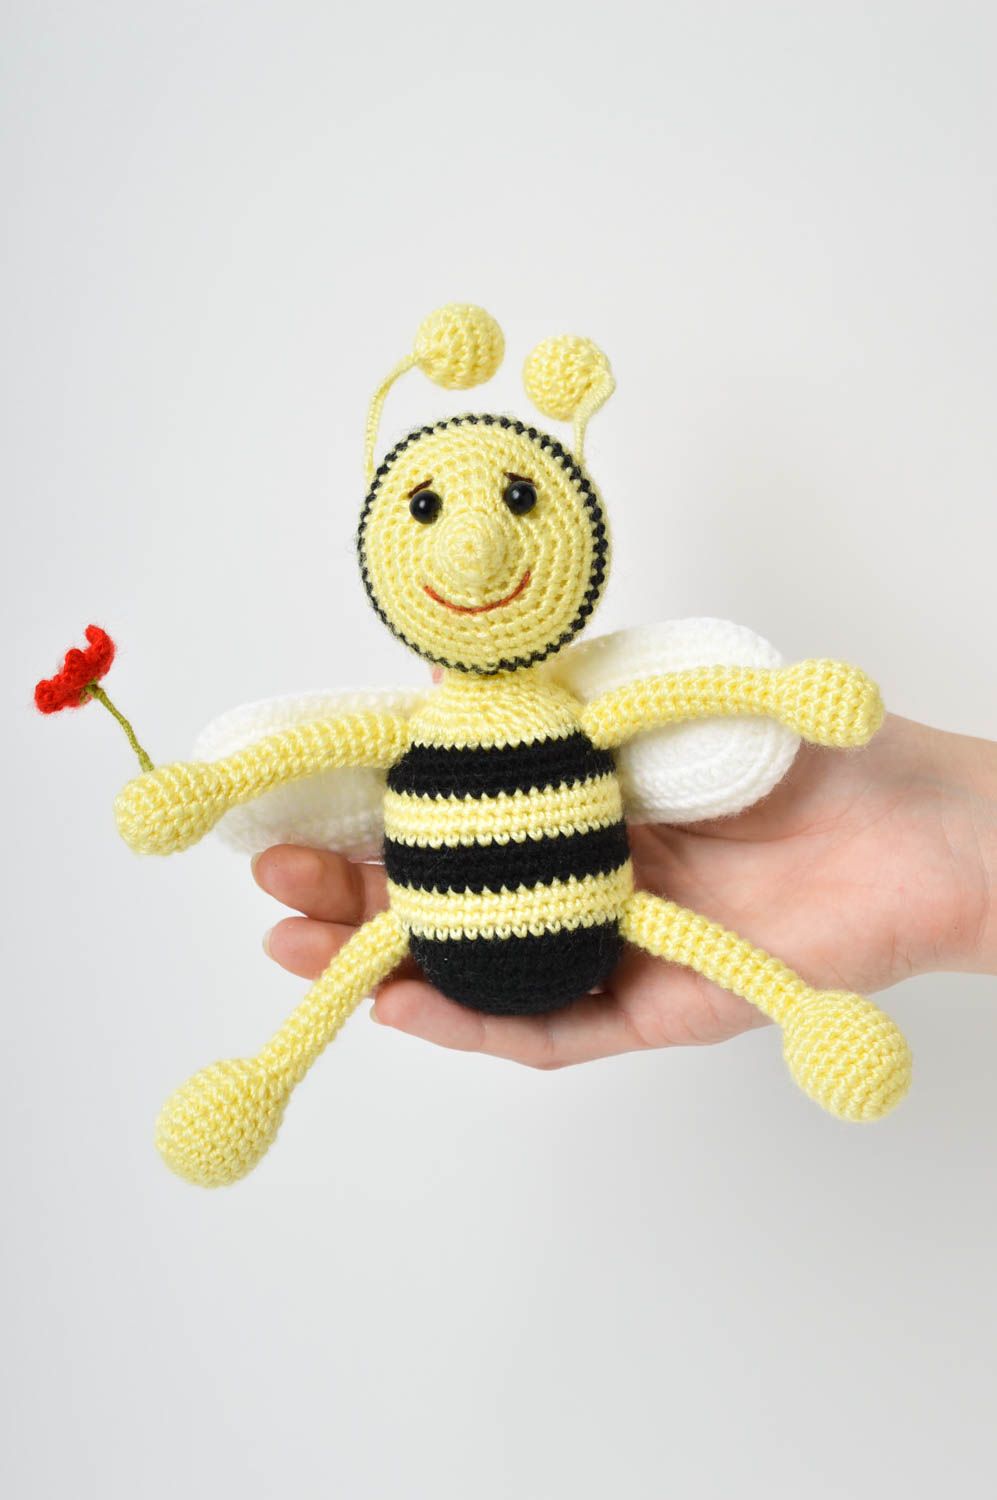 Мягкая игрушка ручной работы игрушка пчелка крючком игрушка авторская кукла фото 5